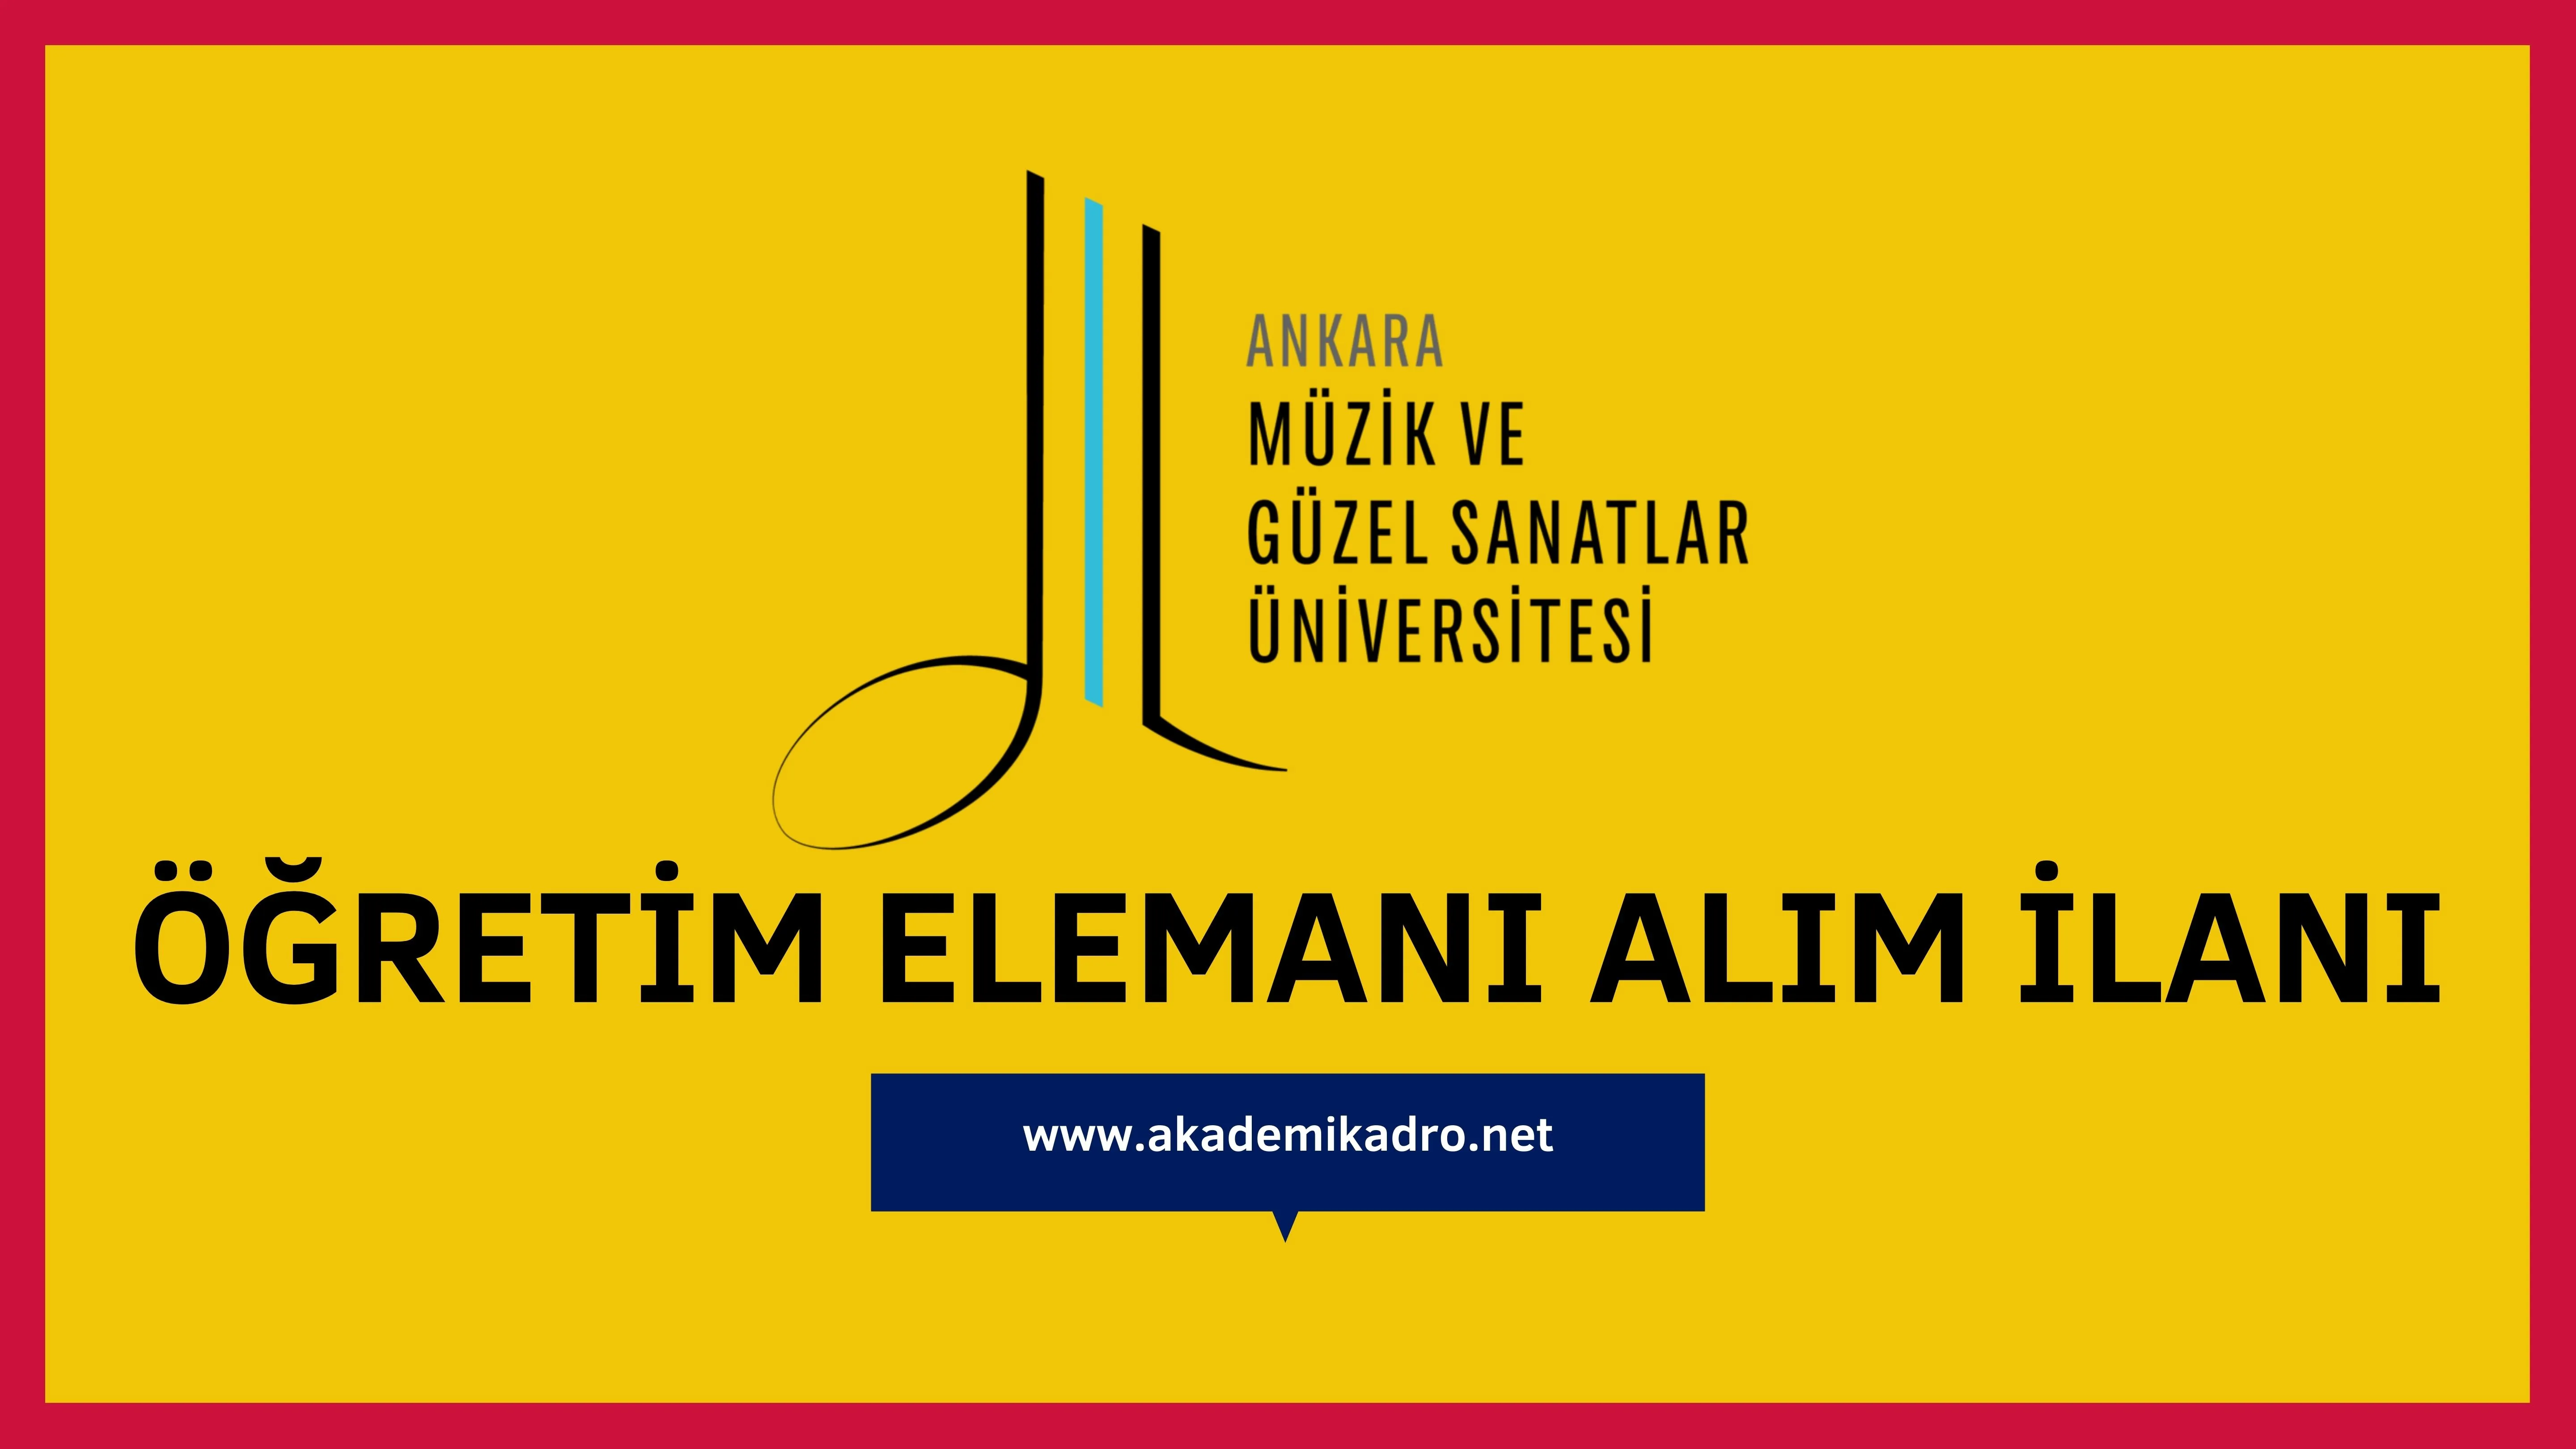 Ankara Müzik ve Güzel Sanatlar Üniversitesi 6 Öğretim görevlisi ve çeşitli branşlarda 9 Öğretim üyesi alacak.